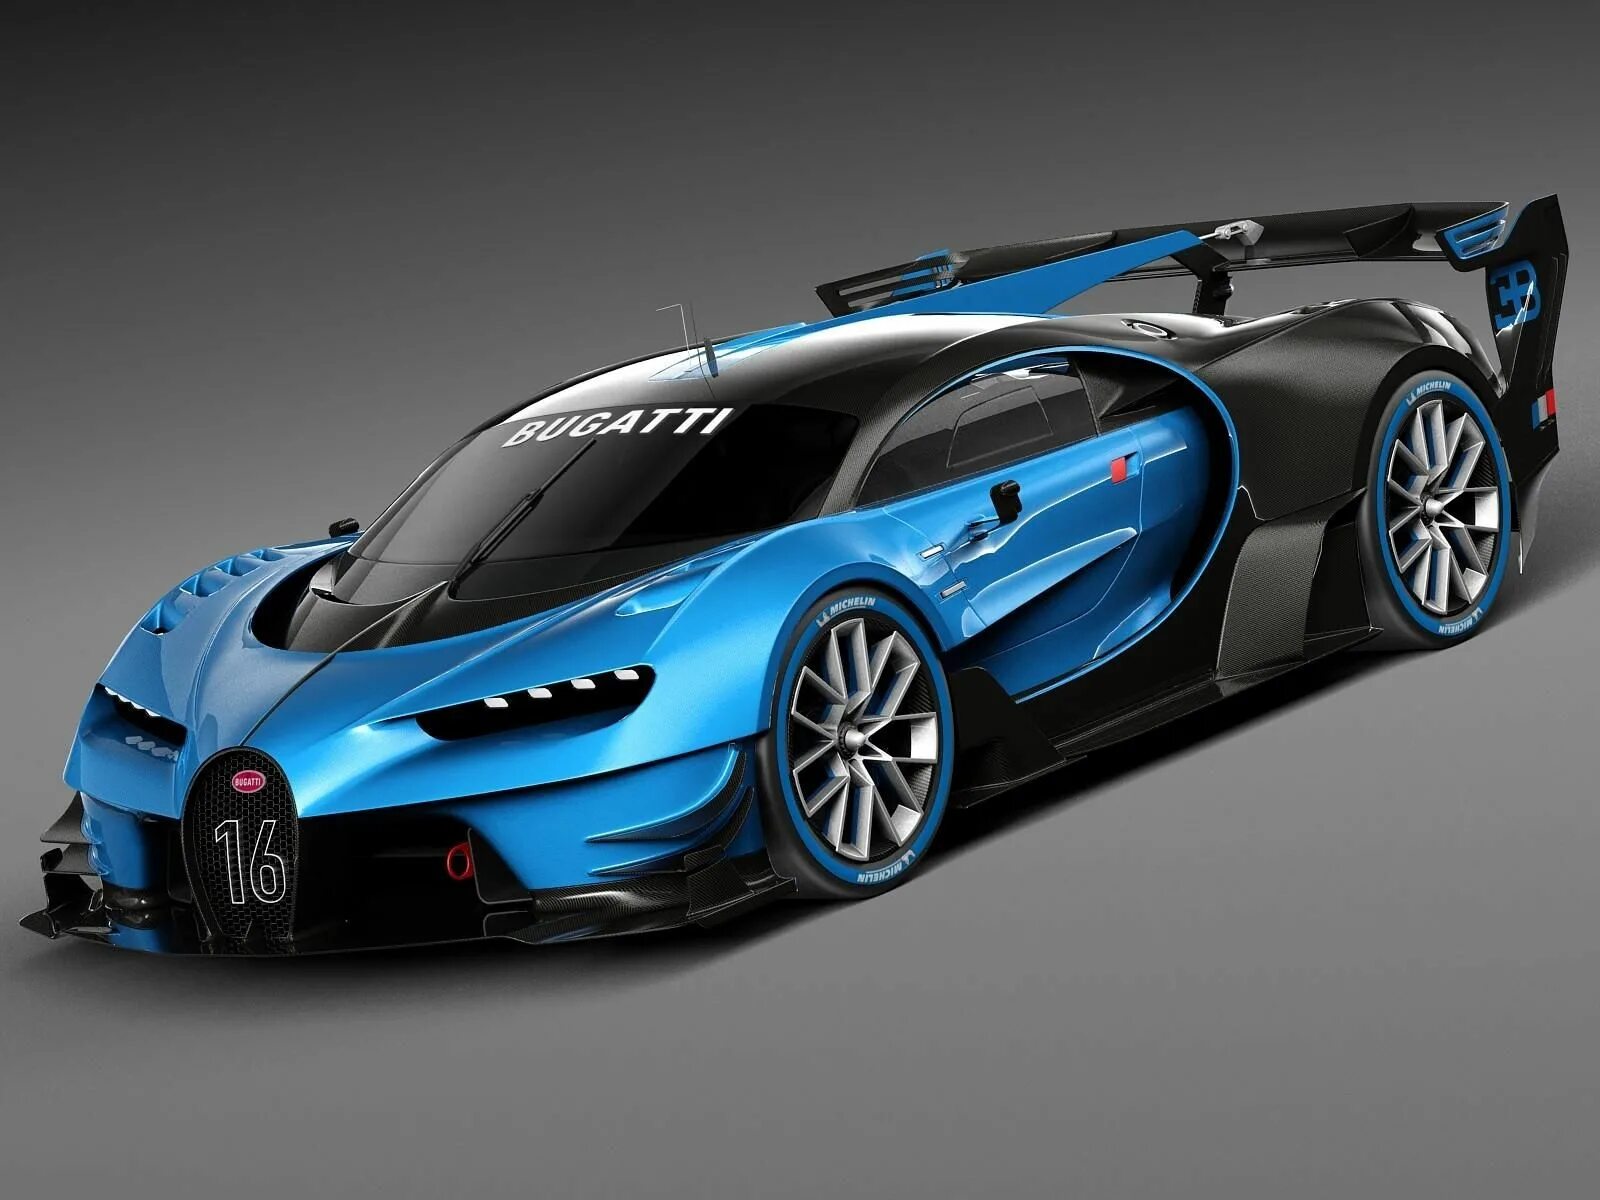 Bugatti models. Bugatti Vision Gran Turismo 2015 Concept. Бугатти ЧИРОН концепт. Bugatti Vision Gran Turismo Concept 2016. Бугатти Шерон концепт.